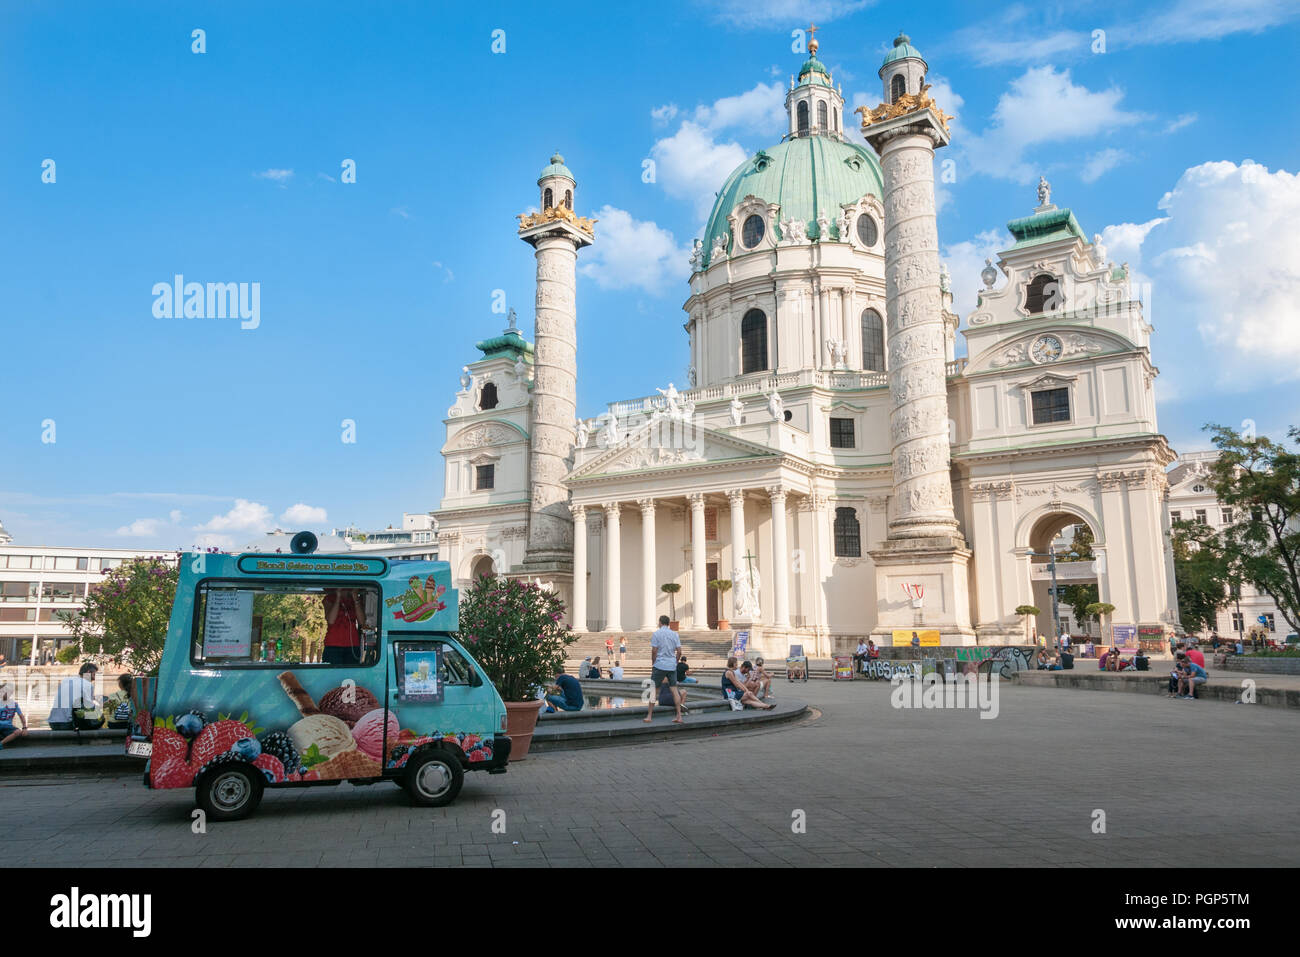 Karlskirche front view, Vienna, Austria Stock Photo